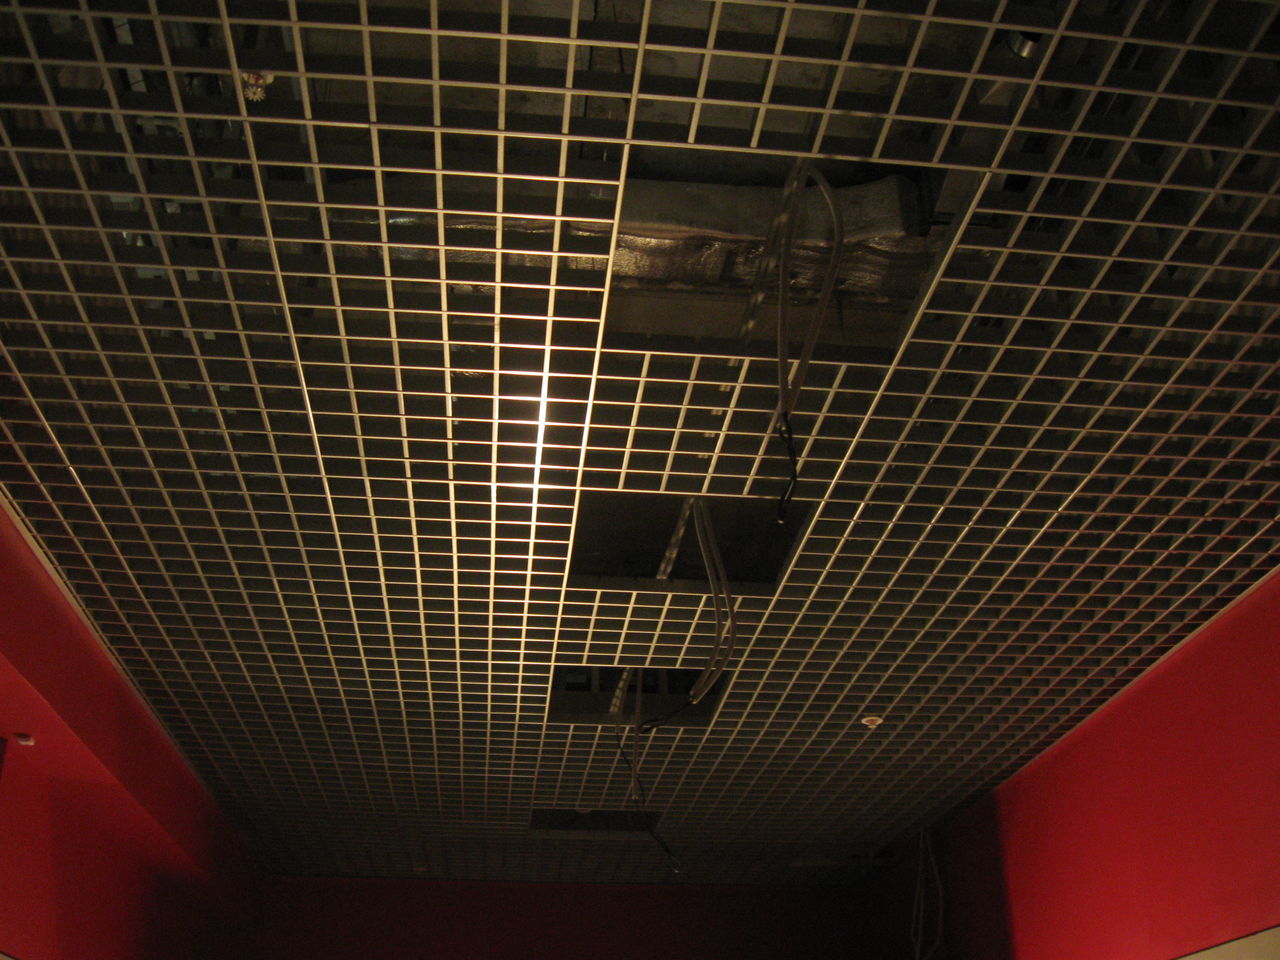 Места под светильники на потолке грильято